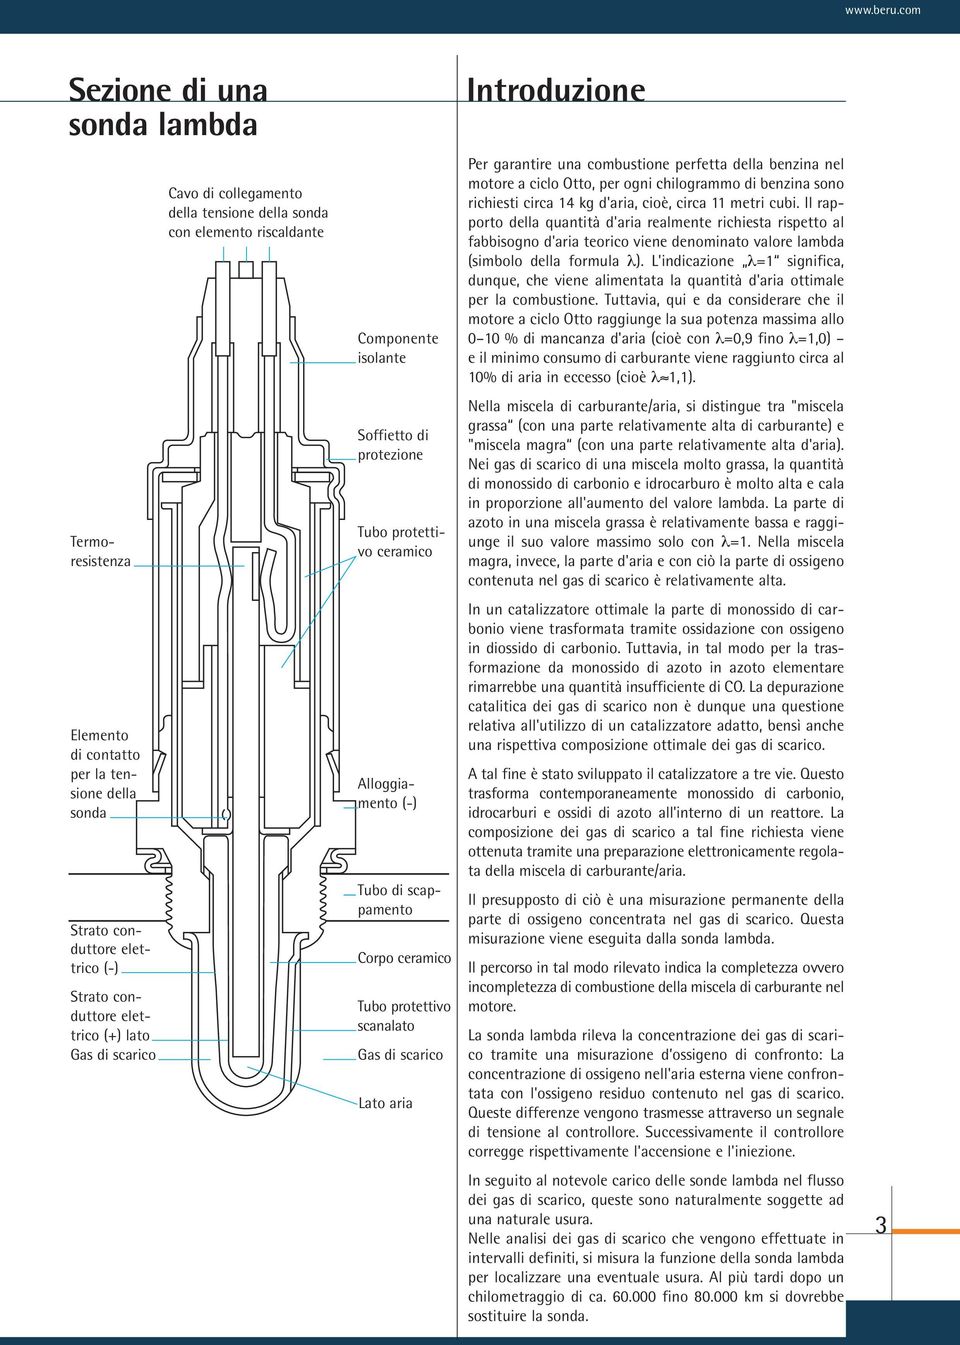 collegamento della tensione della sonda con elemento riscaldante Componente isolante Soffietto di protezione Tubo protettivo ceramico Alloggiamento (-) Tubo di scappamento Corpo ceramico Tubo